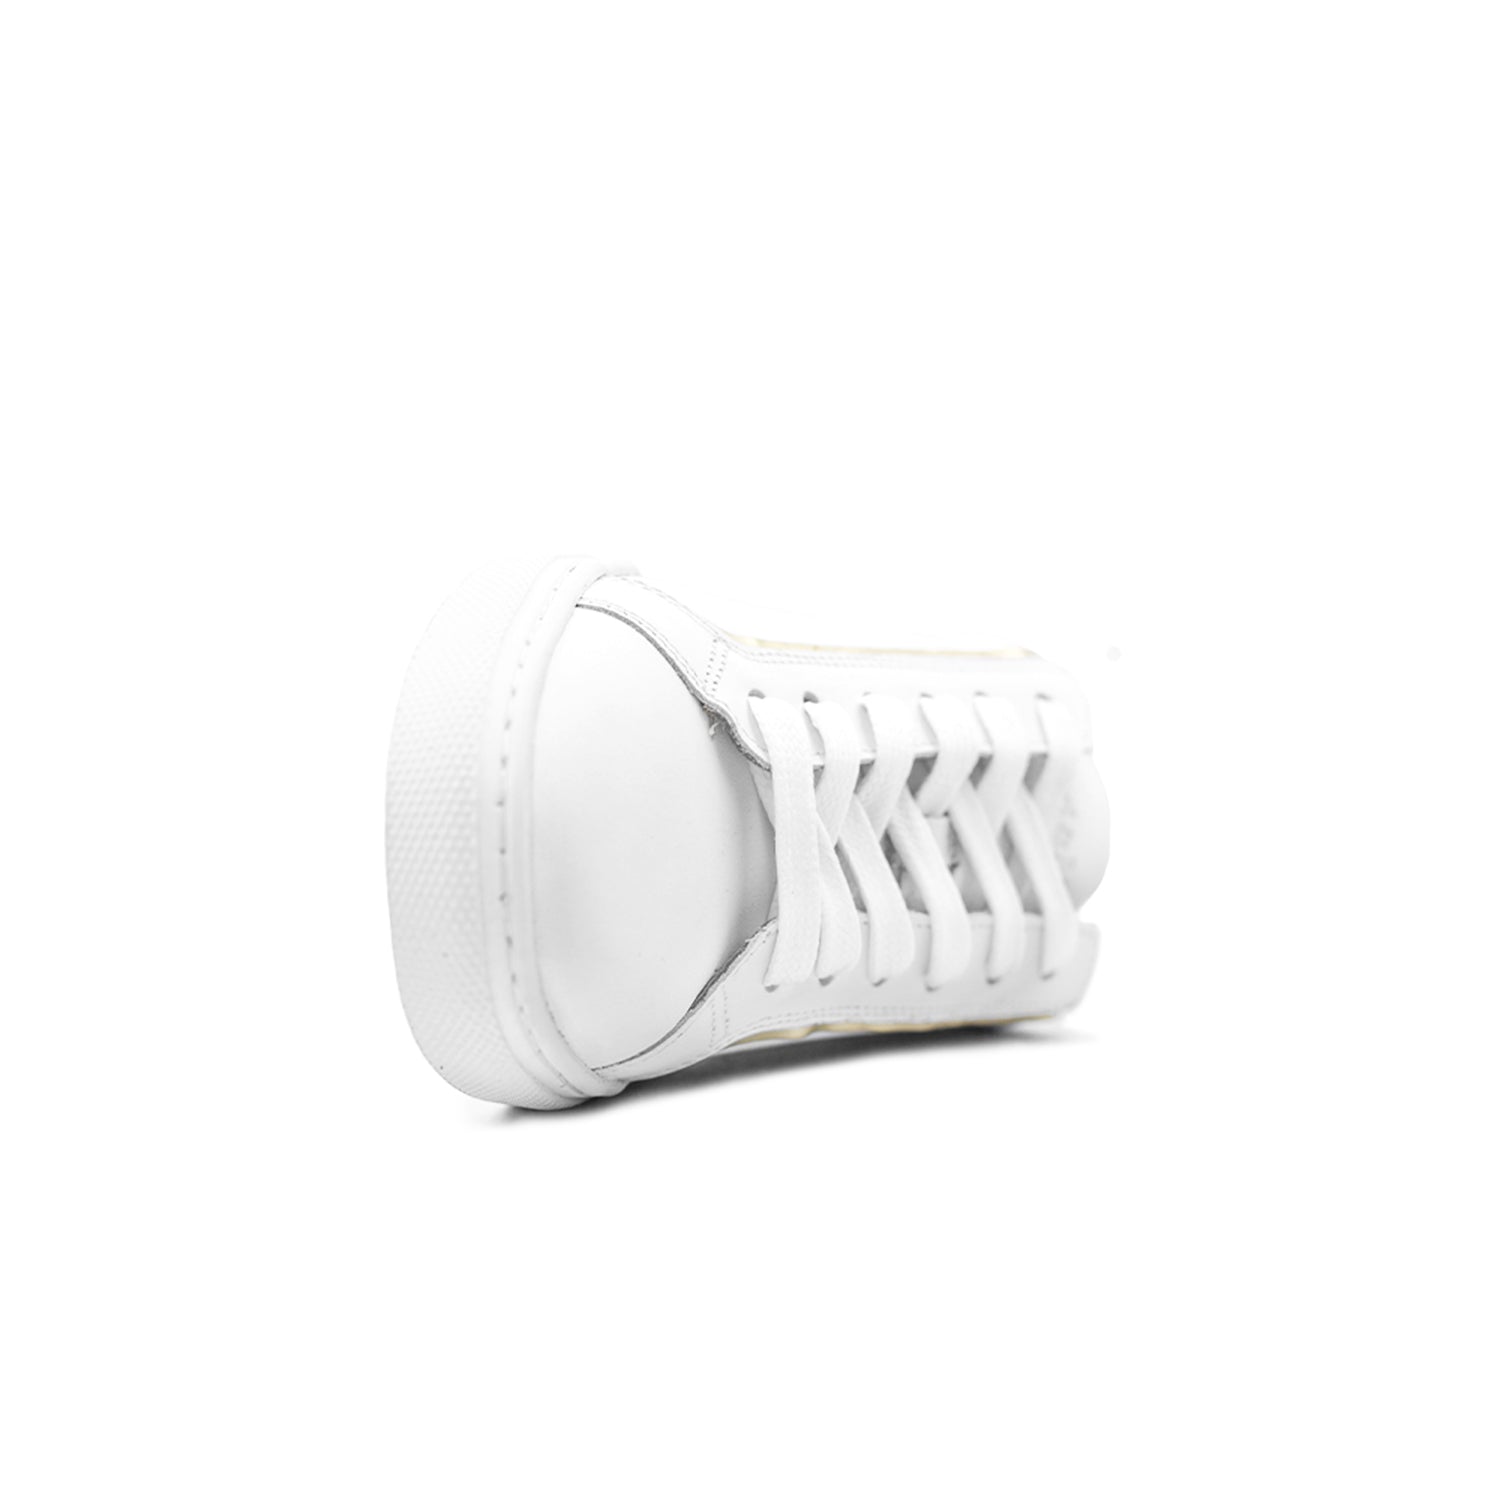 Sneakers blanc or unisex confort ergonomie